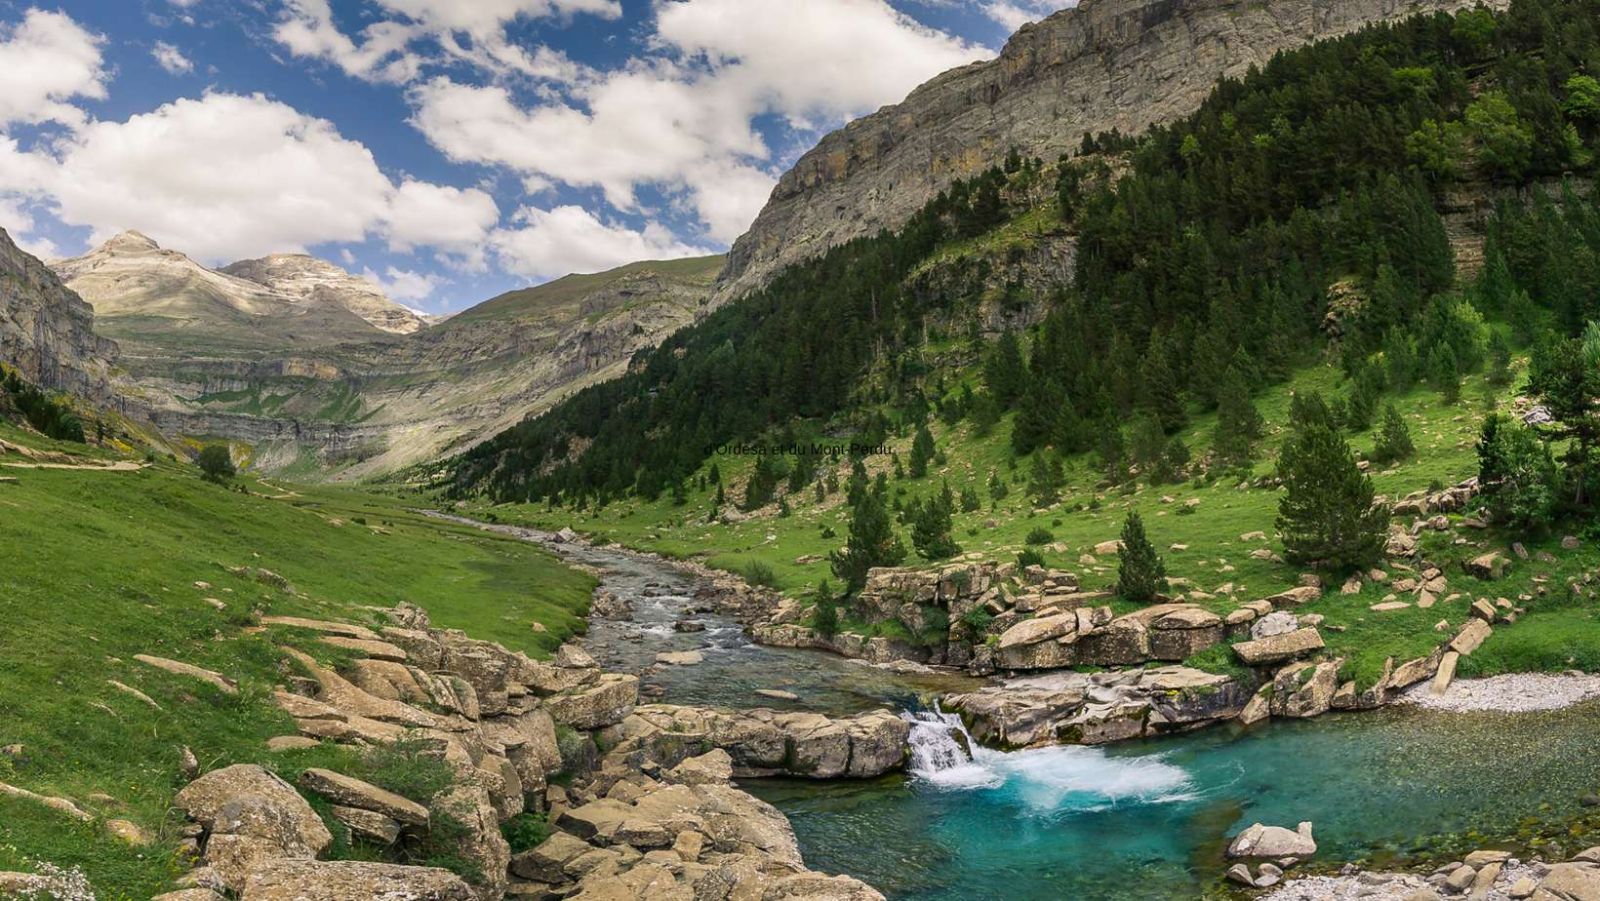 À 3000m d'altitude, ce parc national vous offre des panoramas à couper le souffle sur les Pyrénées